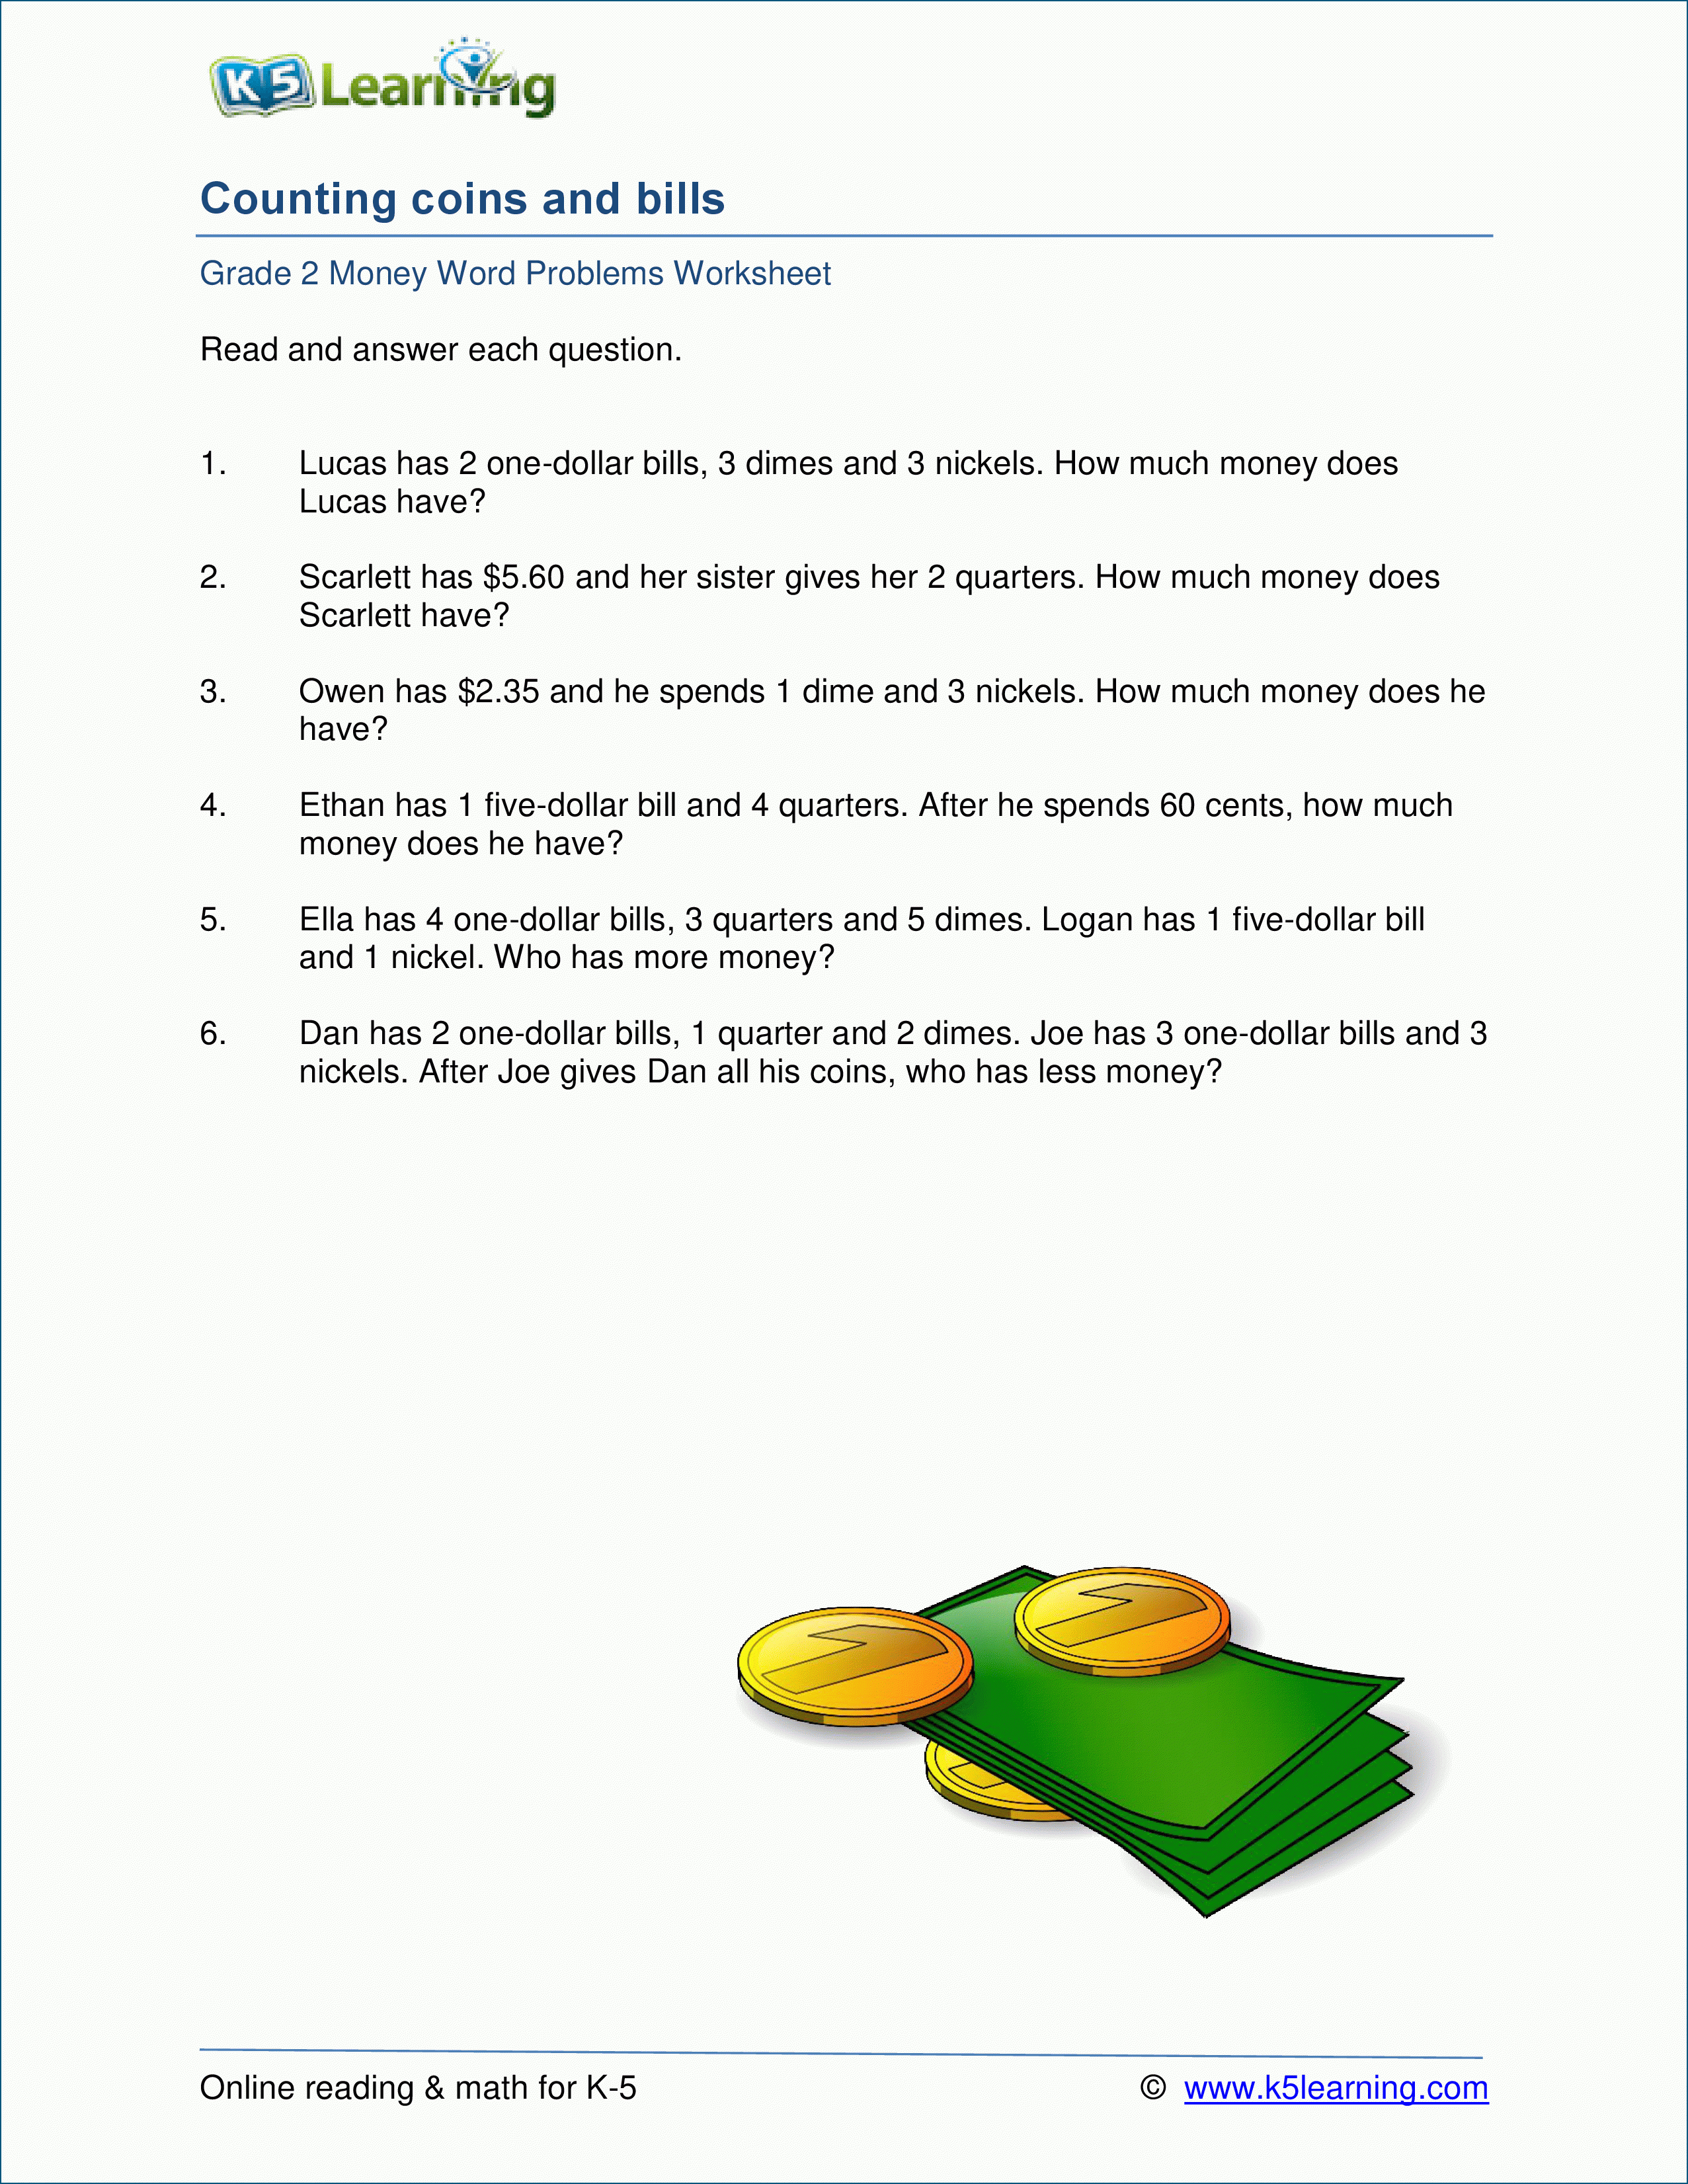 Grade 2 Money Word Problem Worksheets | K5 Learning - K5 Learning Free Printable Worksheets